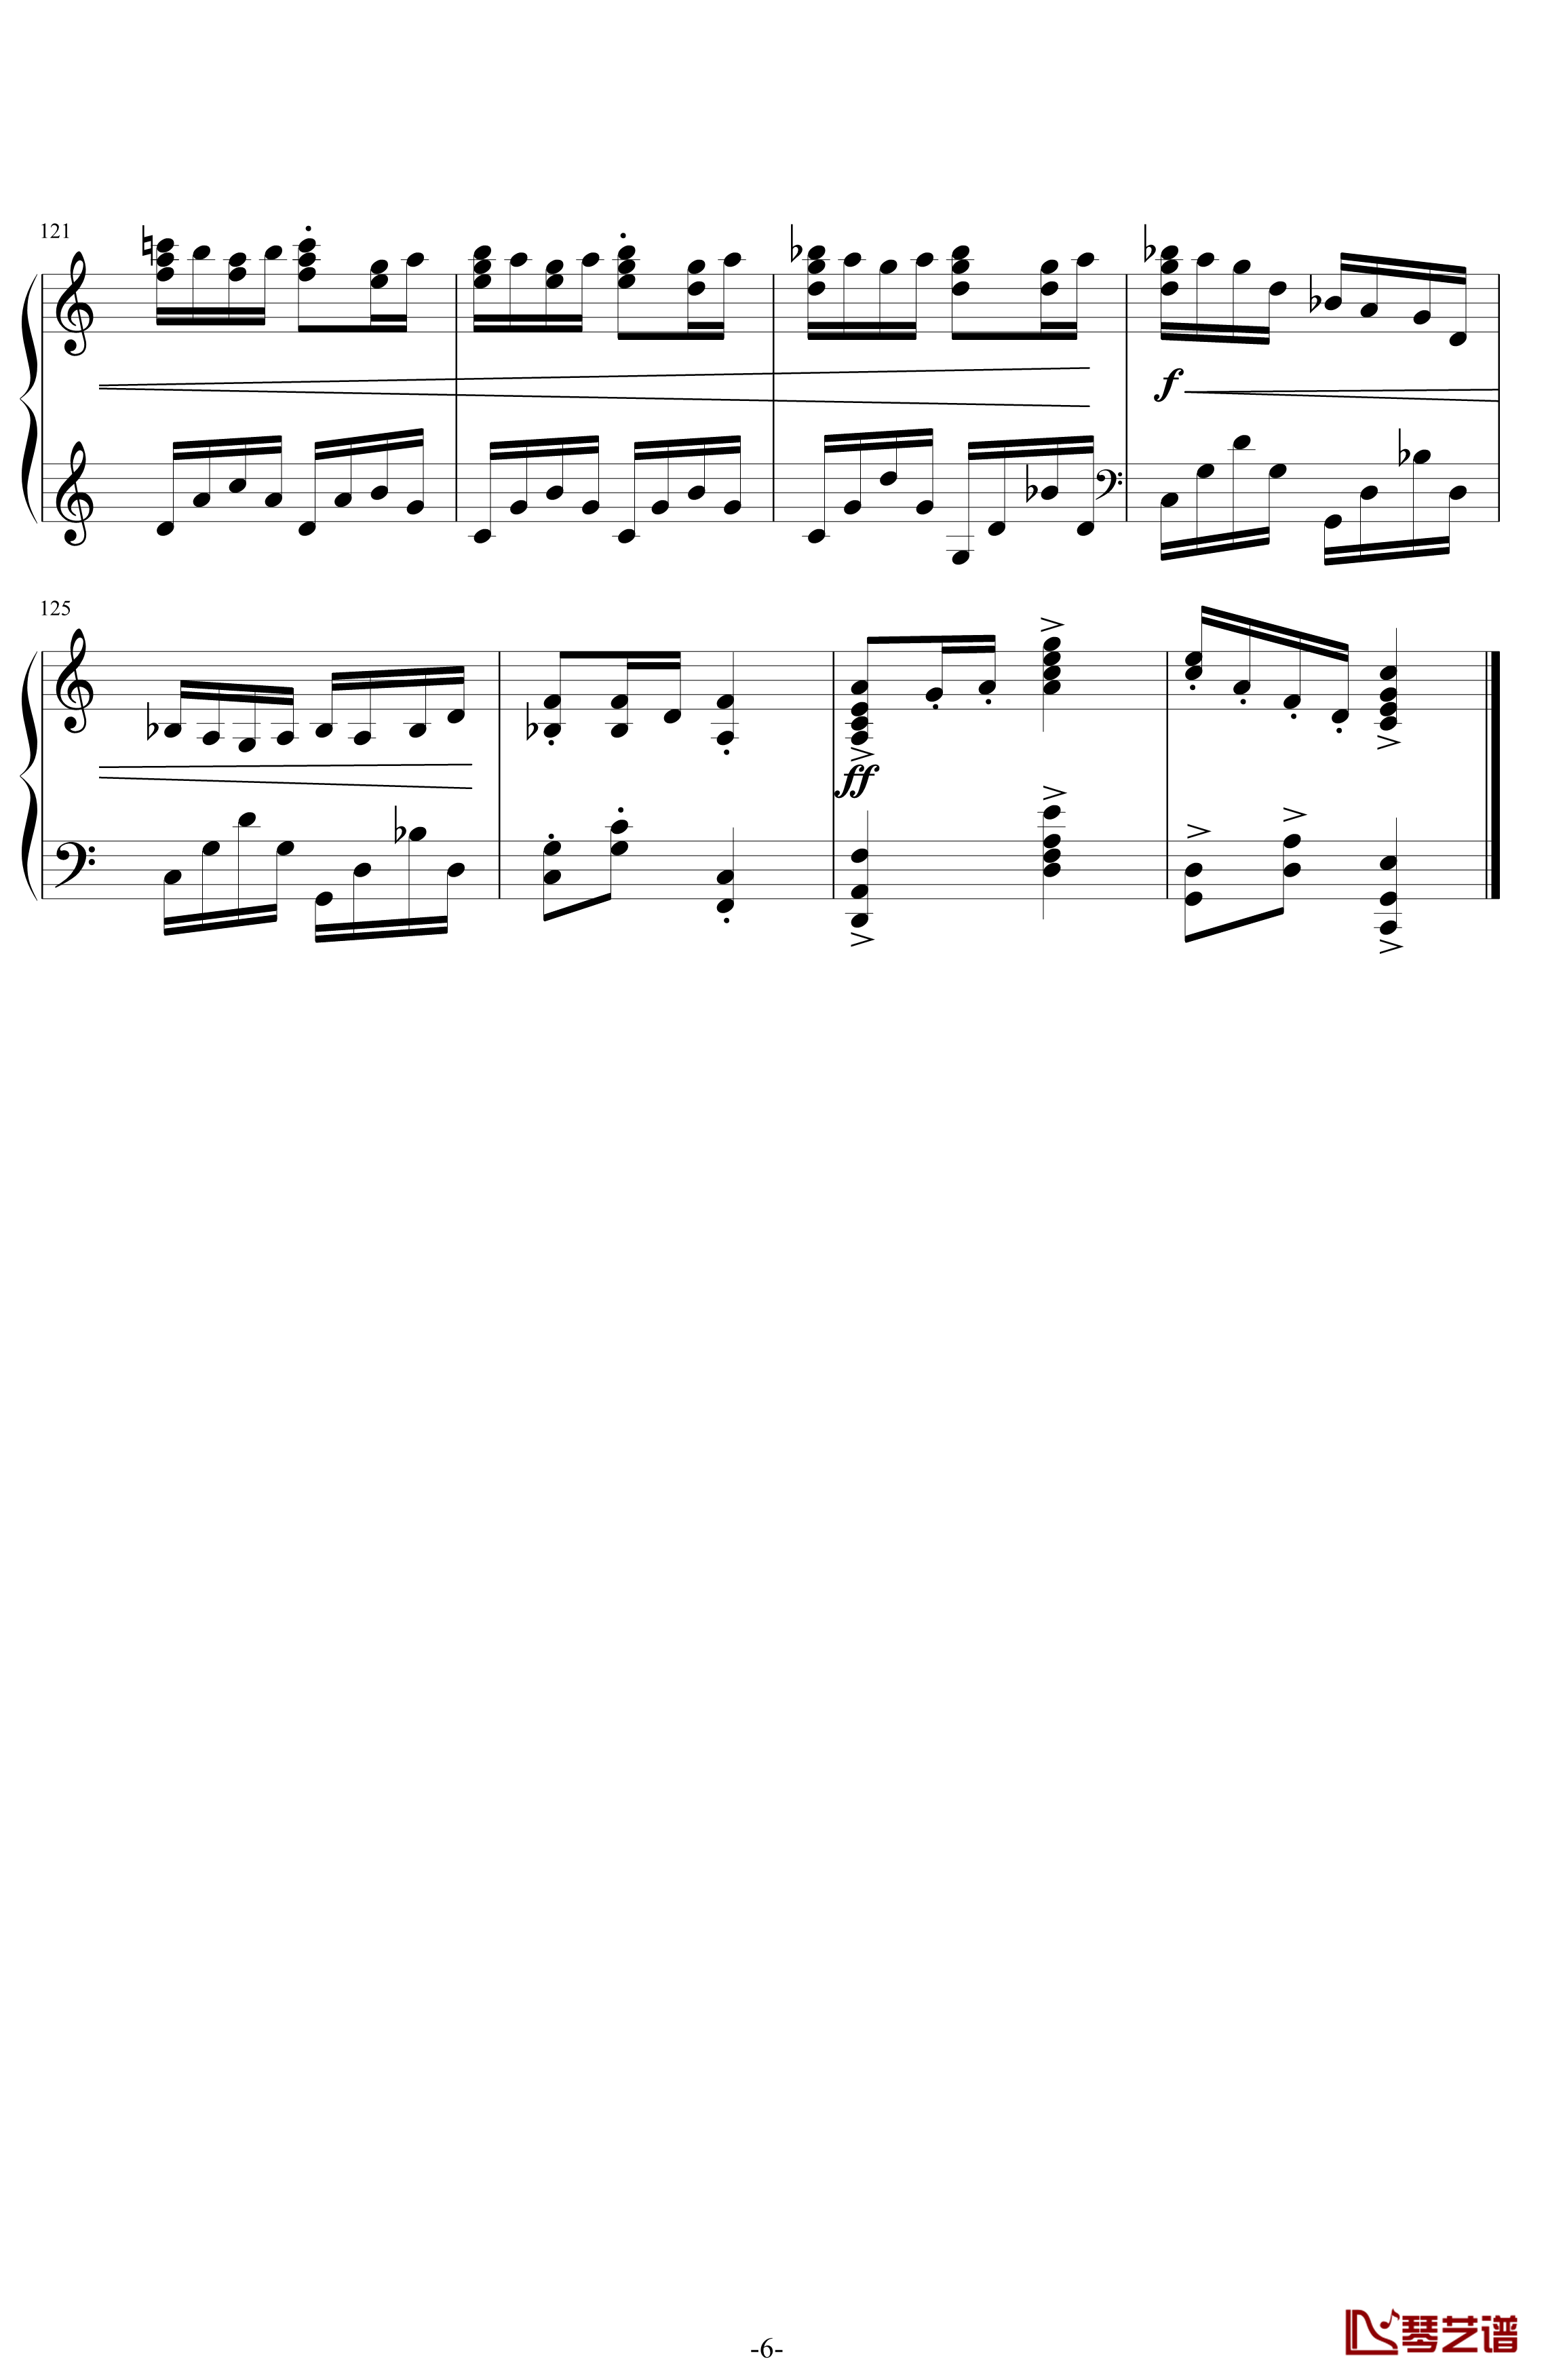 利戈顿舞曲钢琴谱-选自《库普兰之墓》-拉威尔-Ravel6